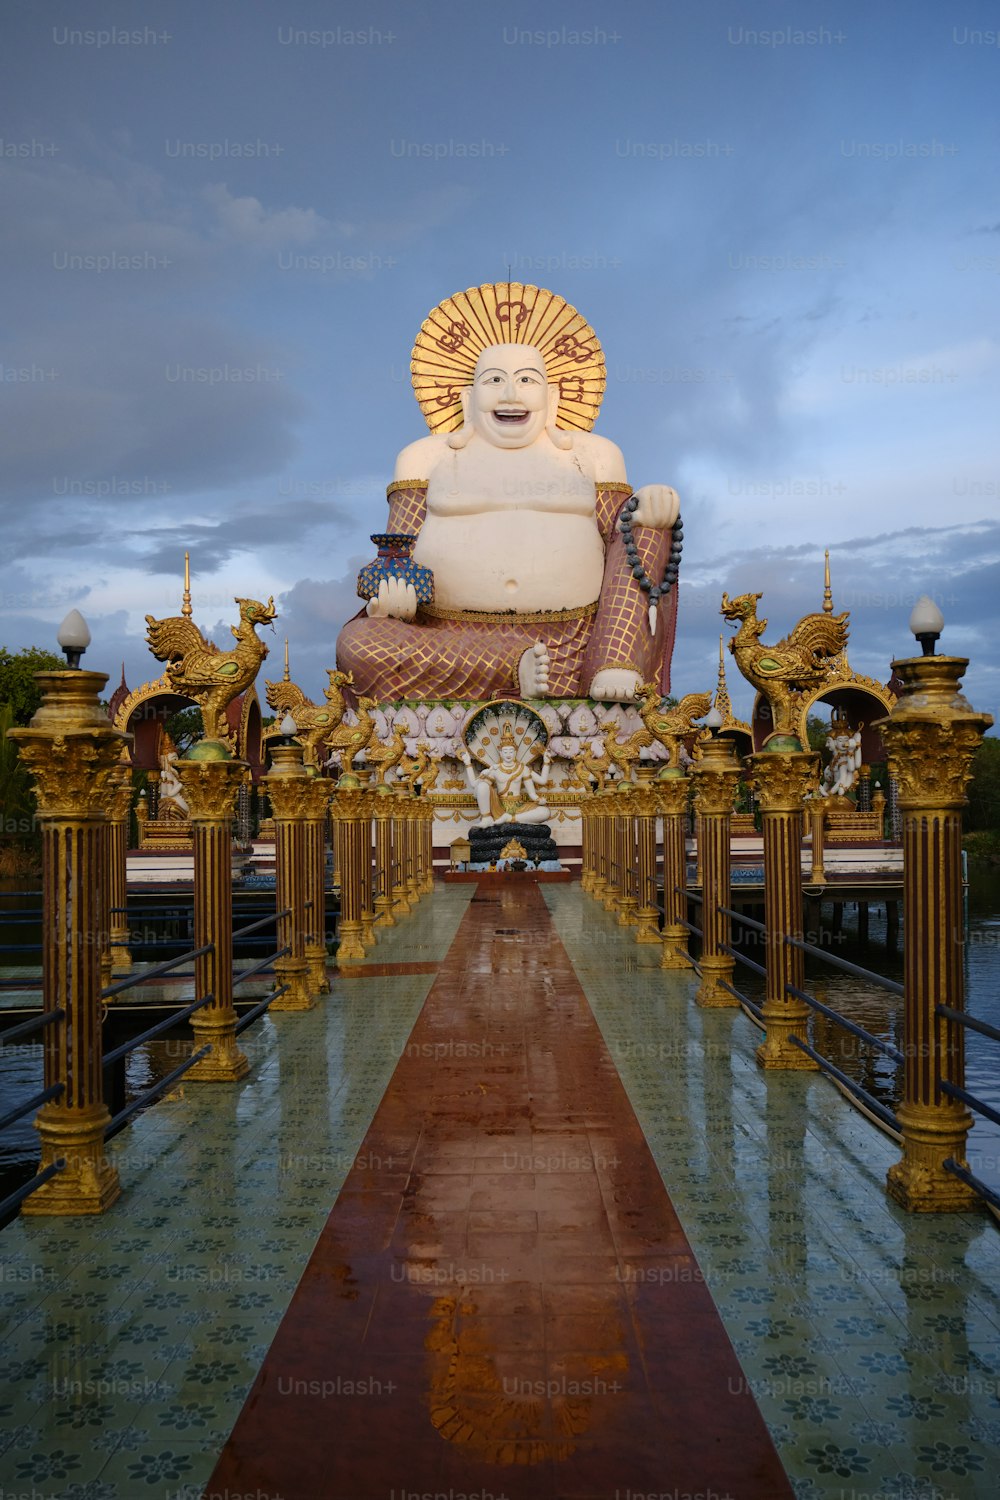 歩道の真ん中に鎮座する大きな仏像